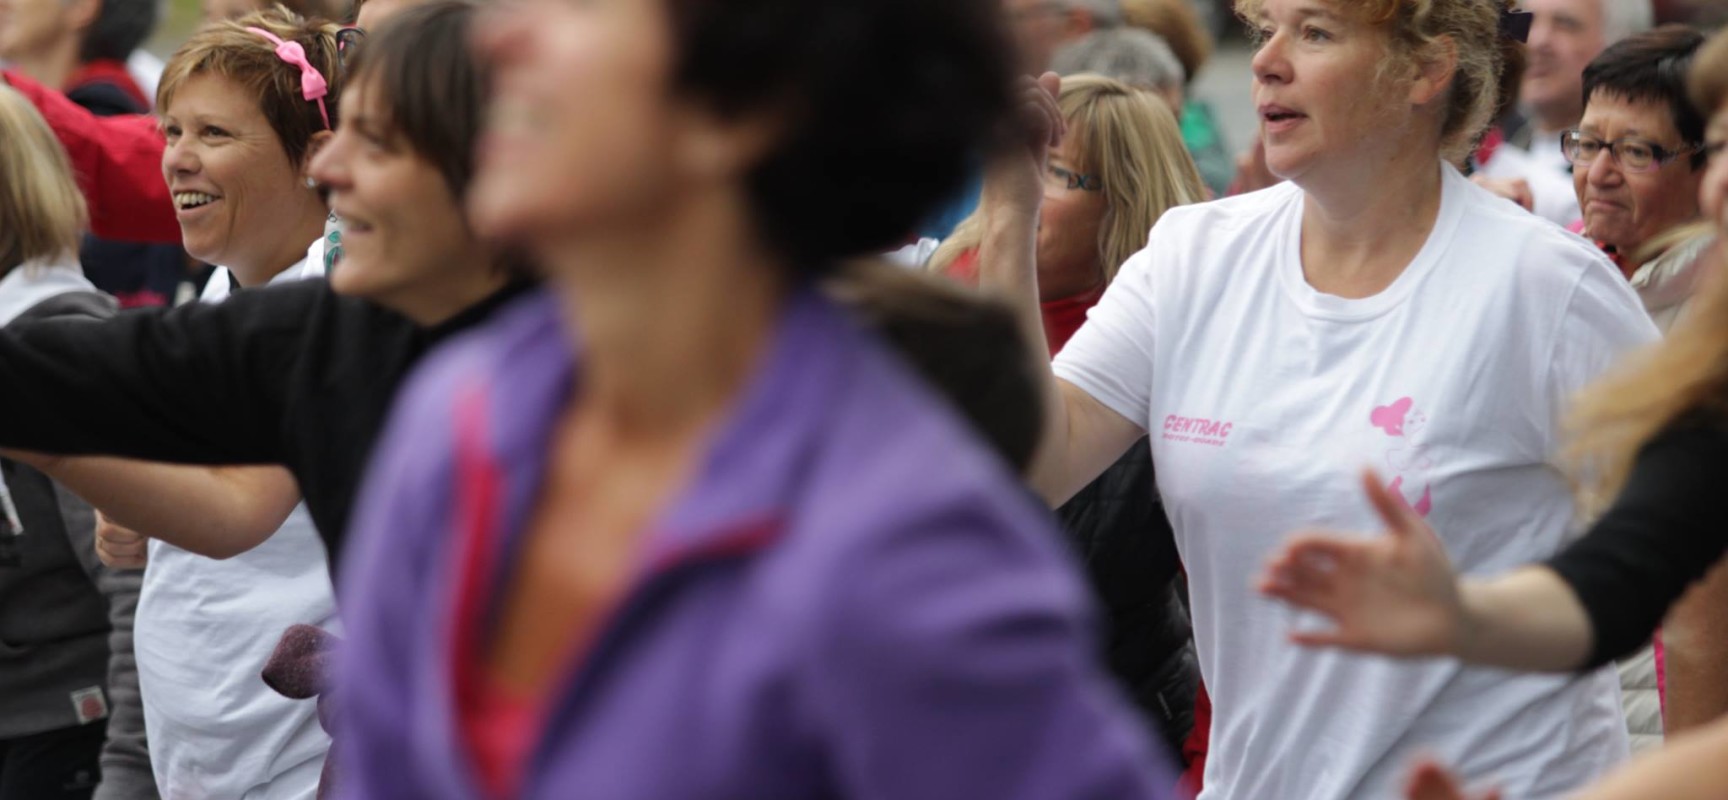 Marche participative « Octobre Rose » Les femmes en marche #Vallière